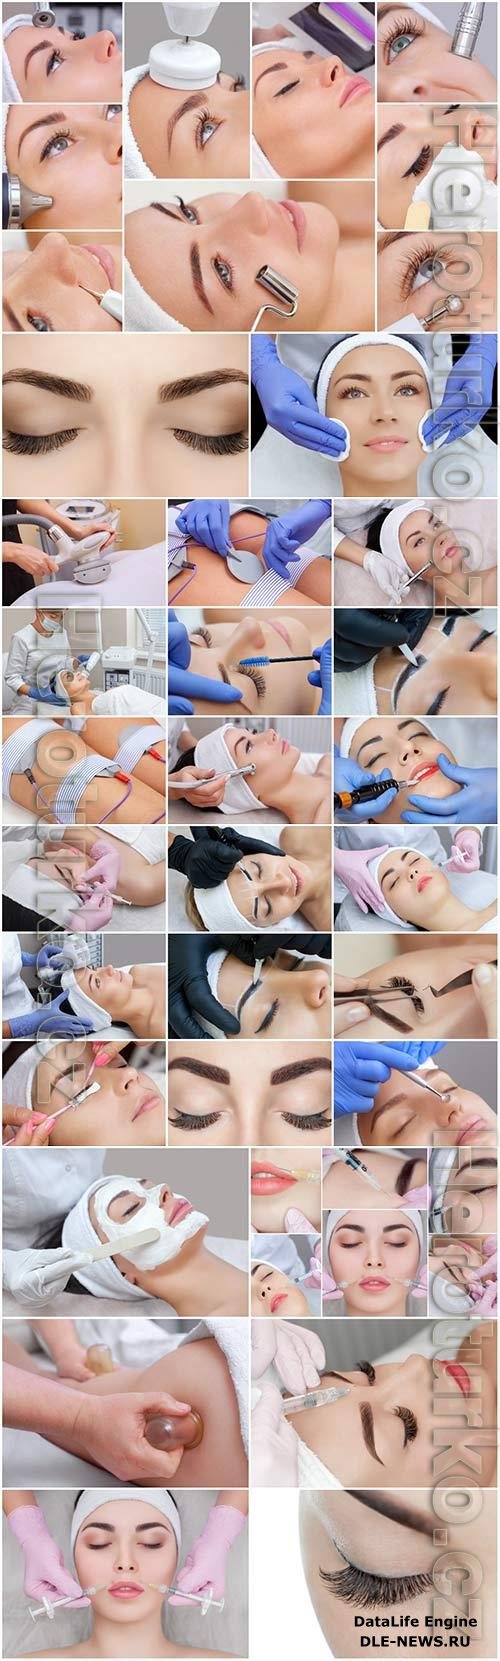 Girl on cosmetic procedures stock photo